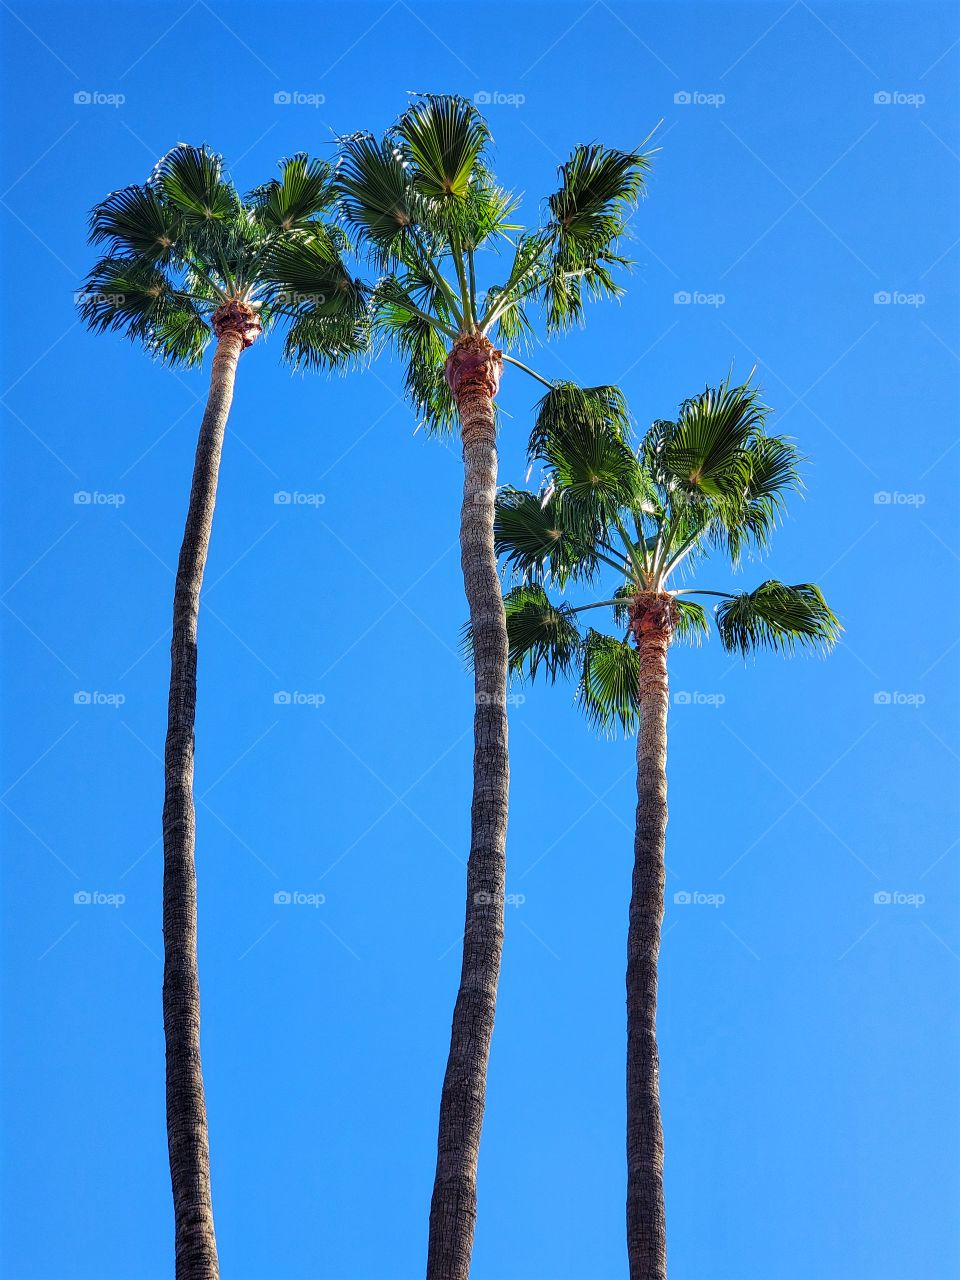 Three tall Palms